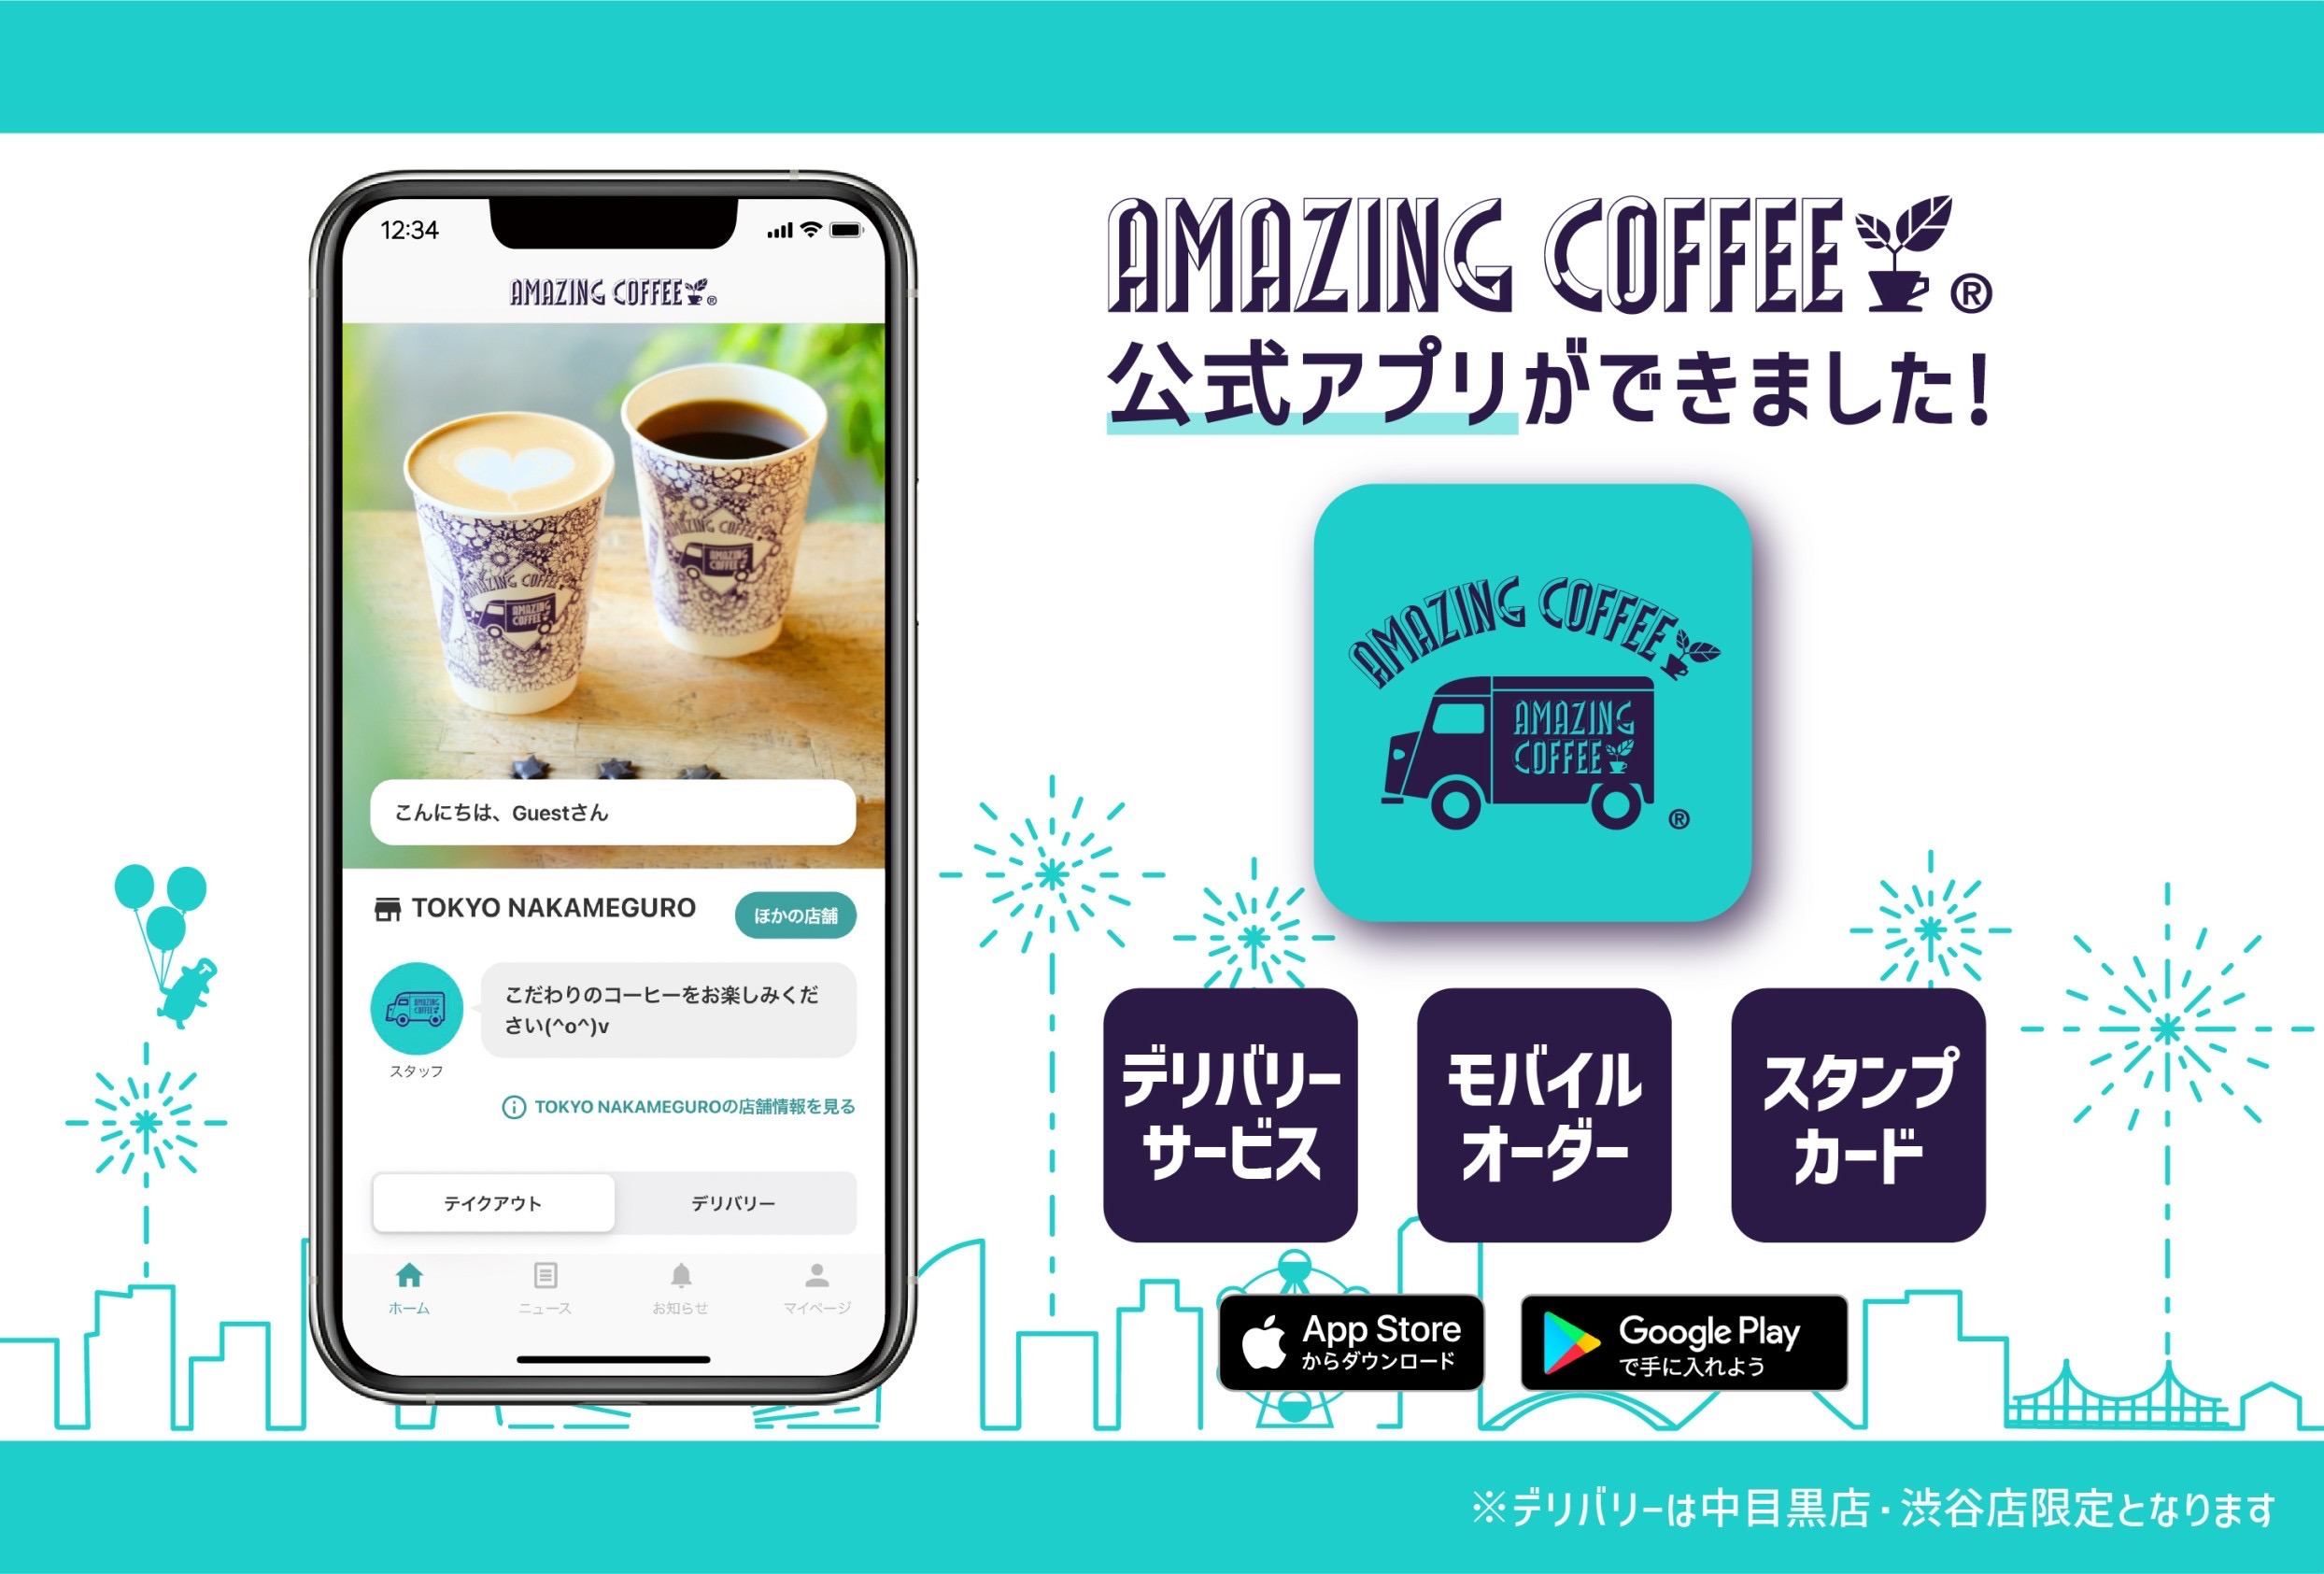 ☕️【AMAZING COFFEE 公式アプリ】登場！✨